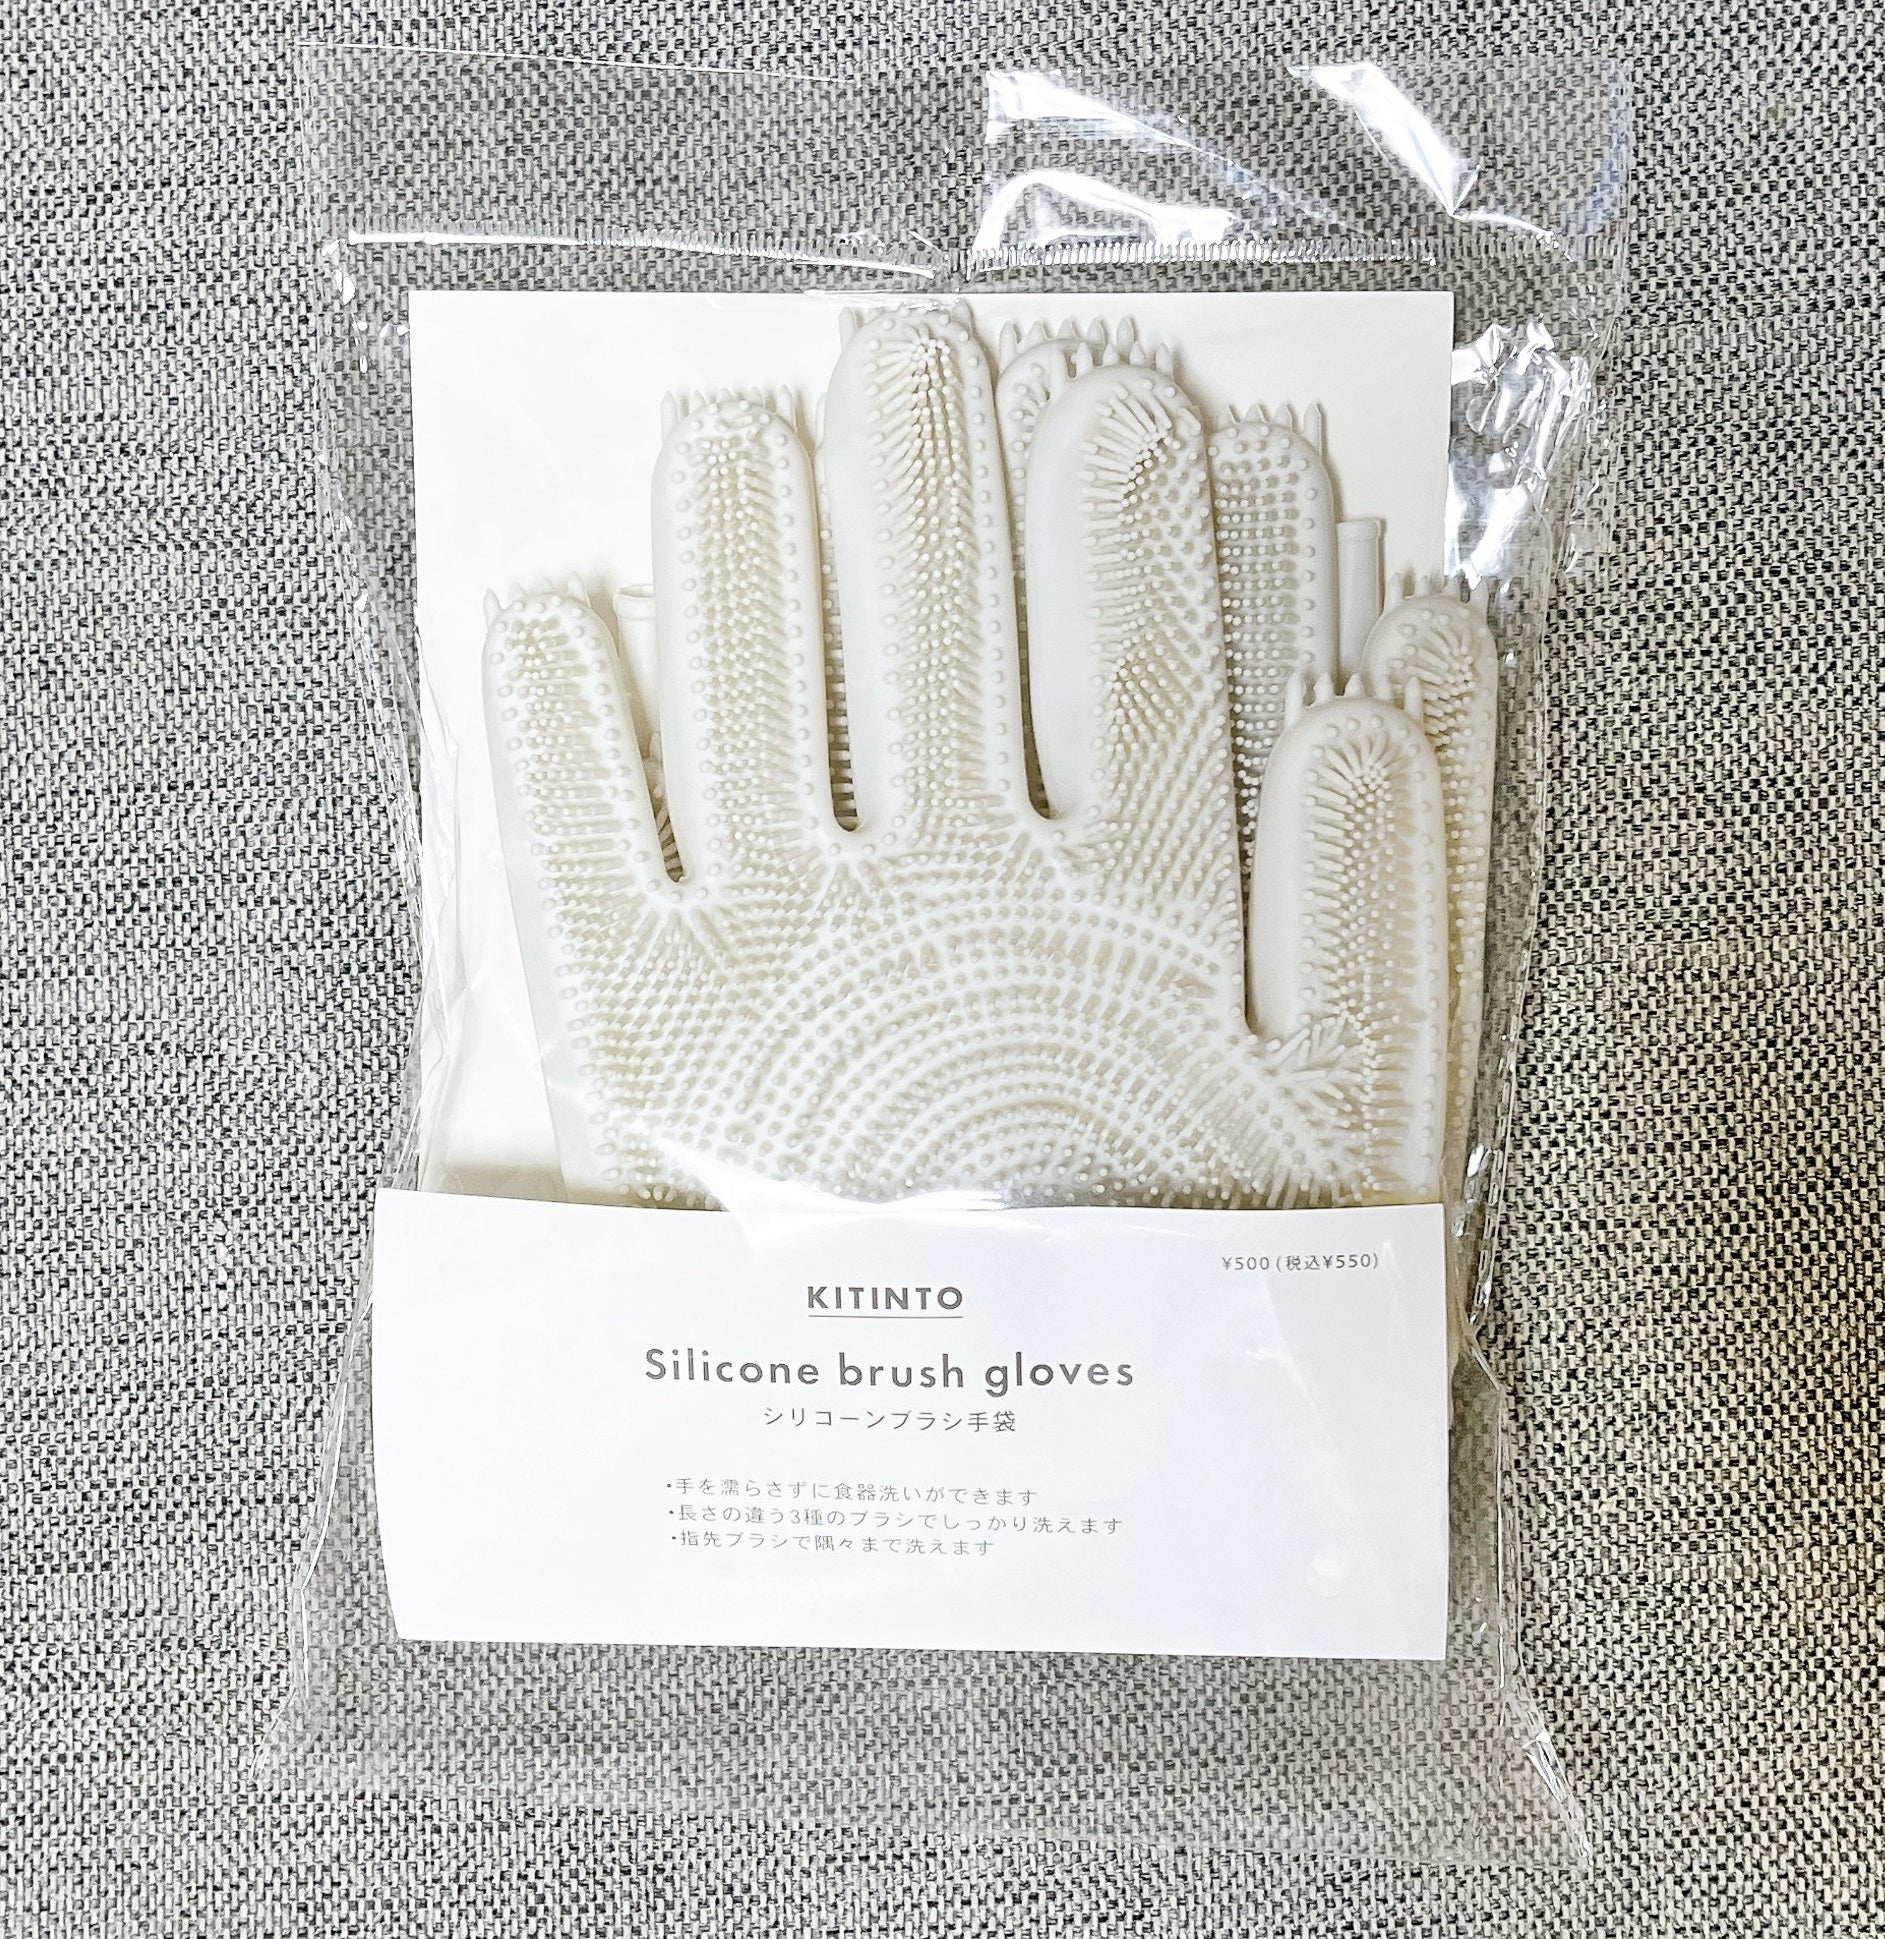 3COINSのおすすめの便利グッズ「シリコーンブラシ手袋」